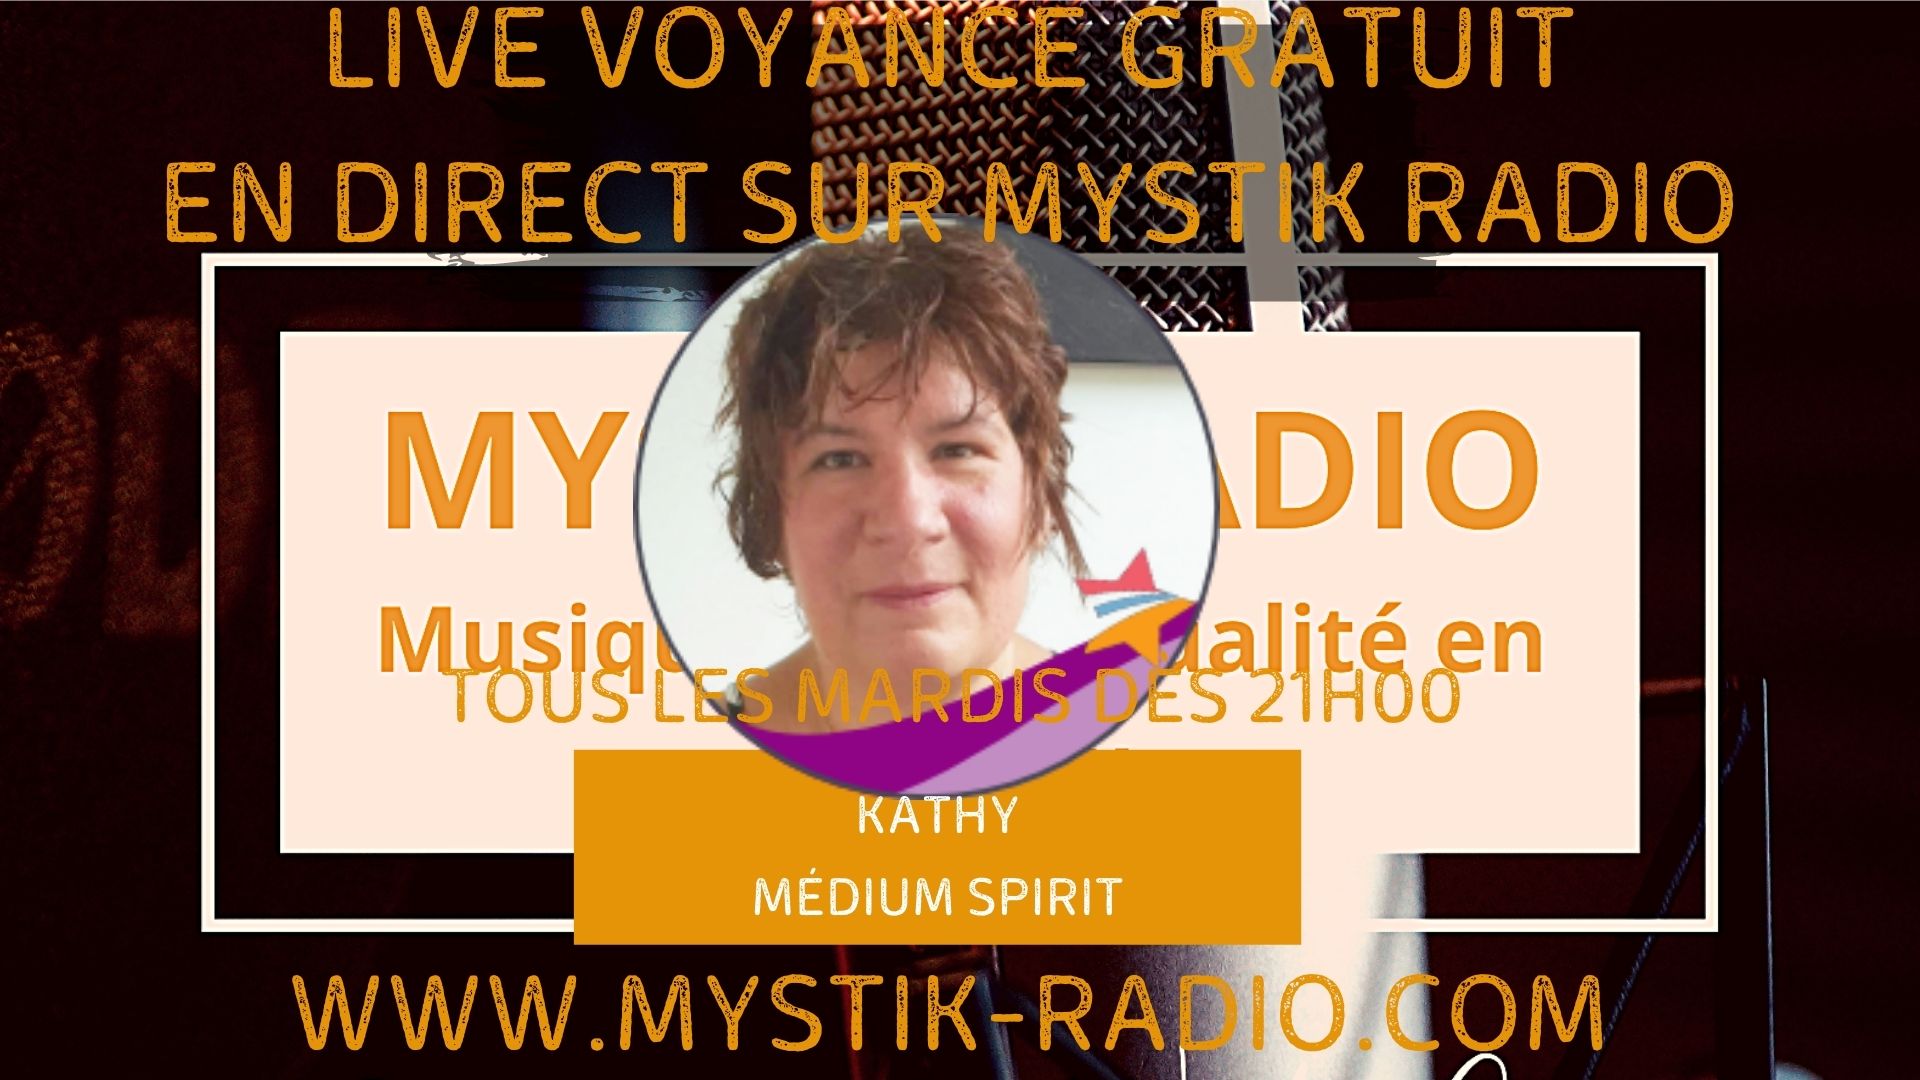 Live voyance gratuite avec Kathy médium spirit et magnétiseuse chez Infinità corse Voyance en direct sur Mystik Radio / Infinità Corse Voyance